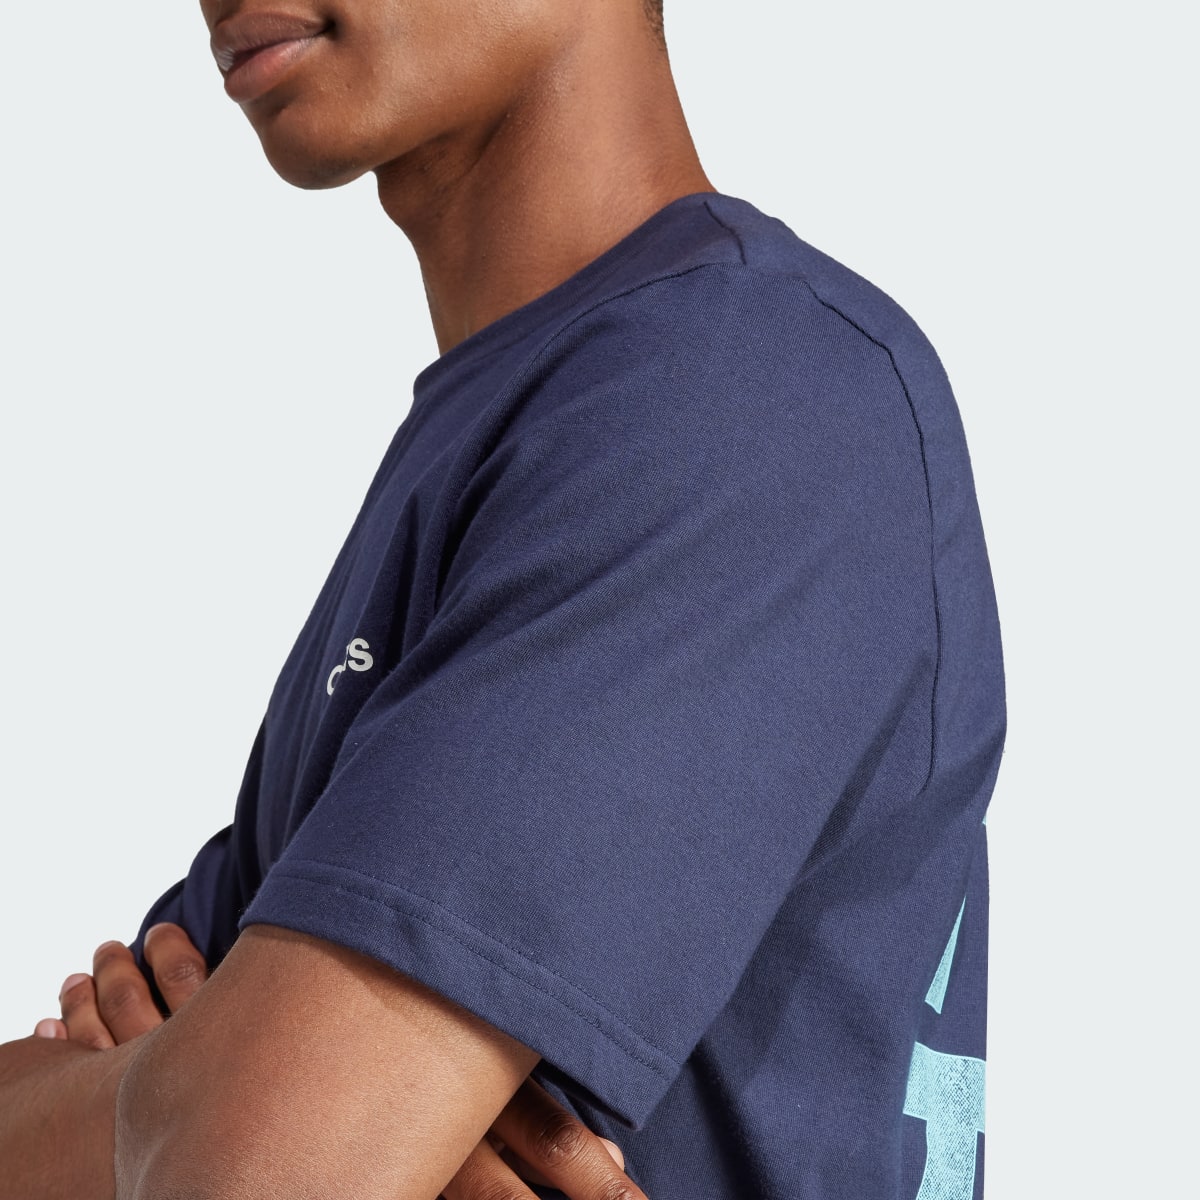 Adidas Tiro Wordmark Graphic T-Shirt. 9